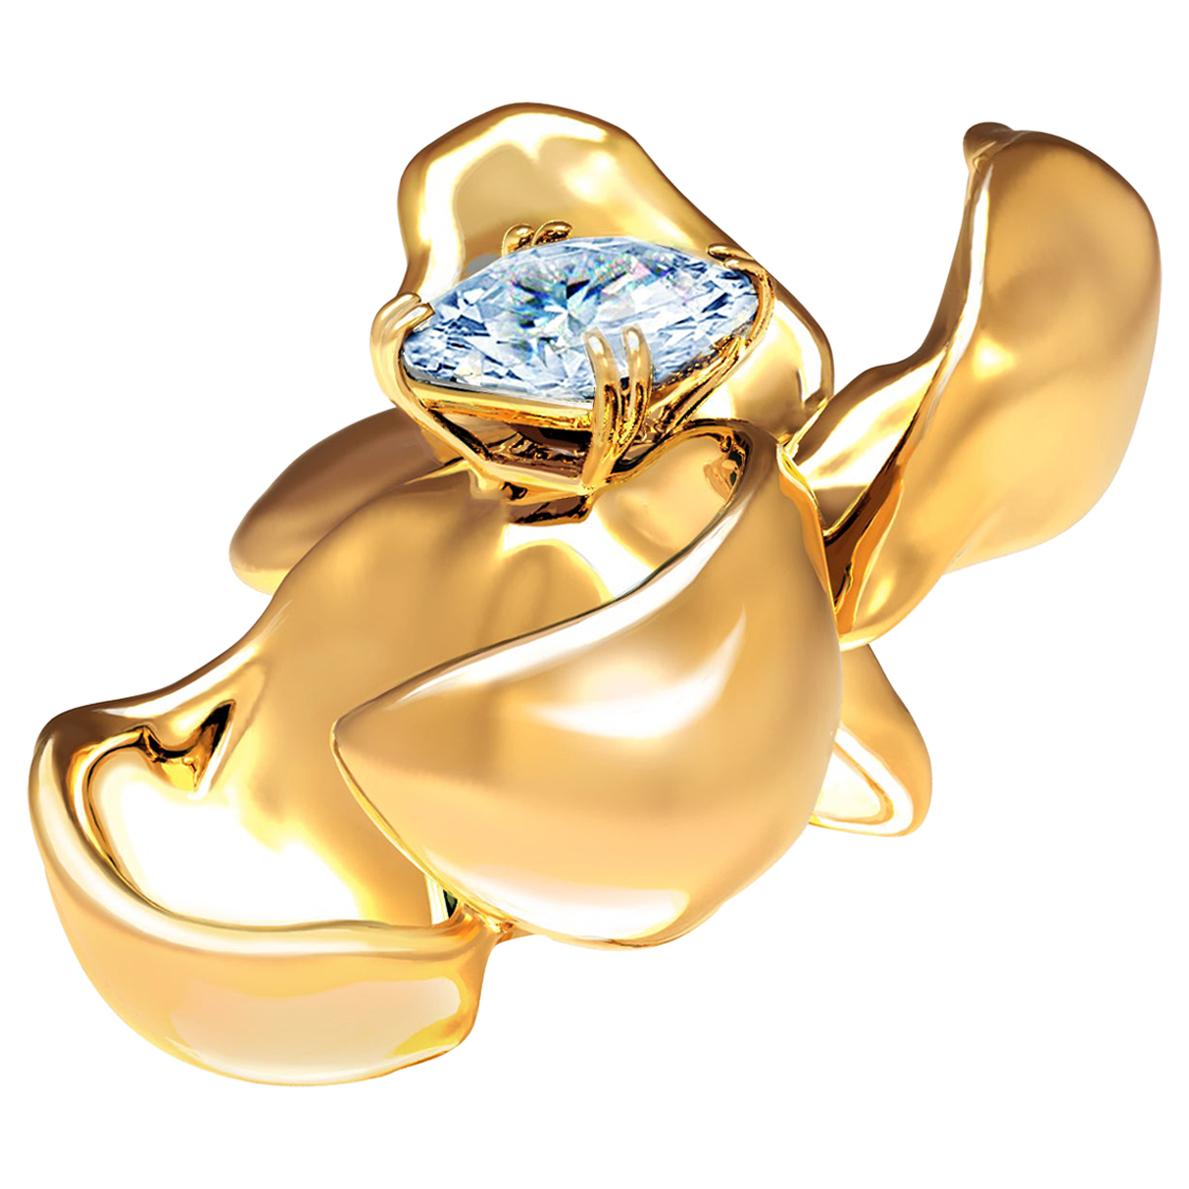 Eighteen Karat Yellow Gold Contemporary Brooch with Light Blue Sapphire